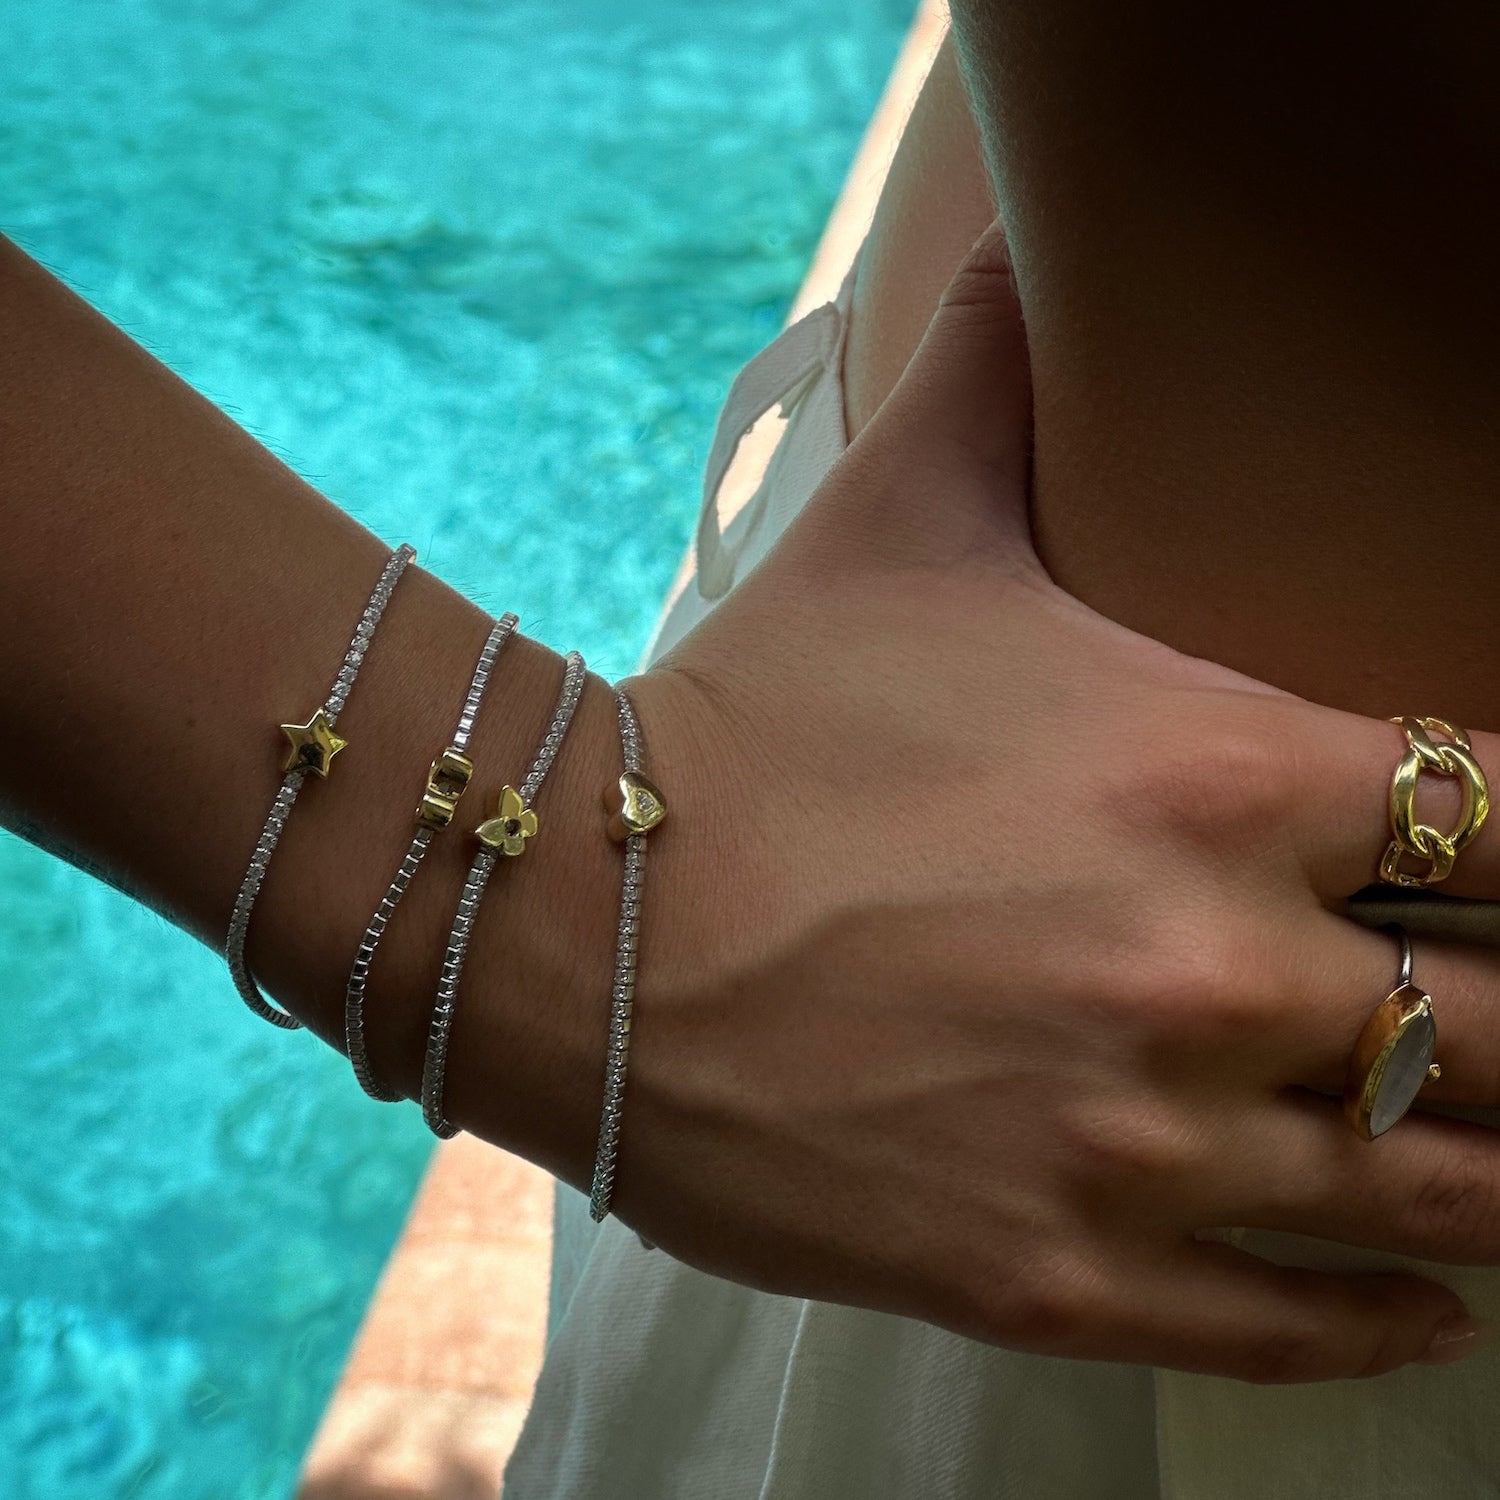 Sparkling charm: Model showcases Gold Butterfly Diamond Tennis Bracelet.